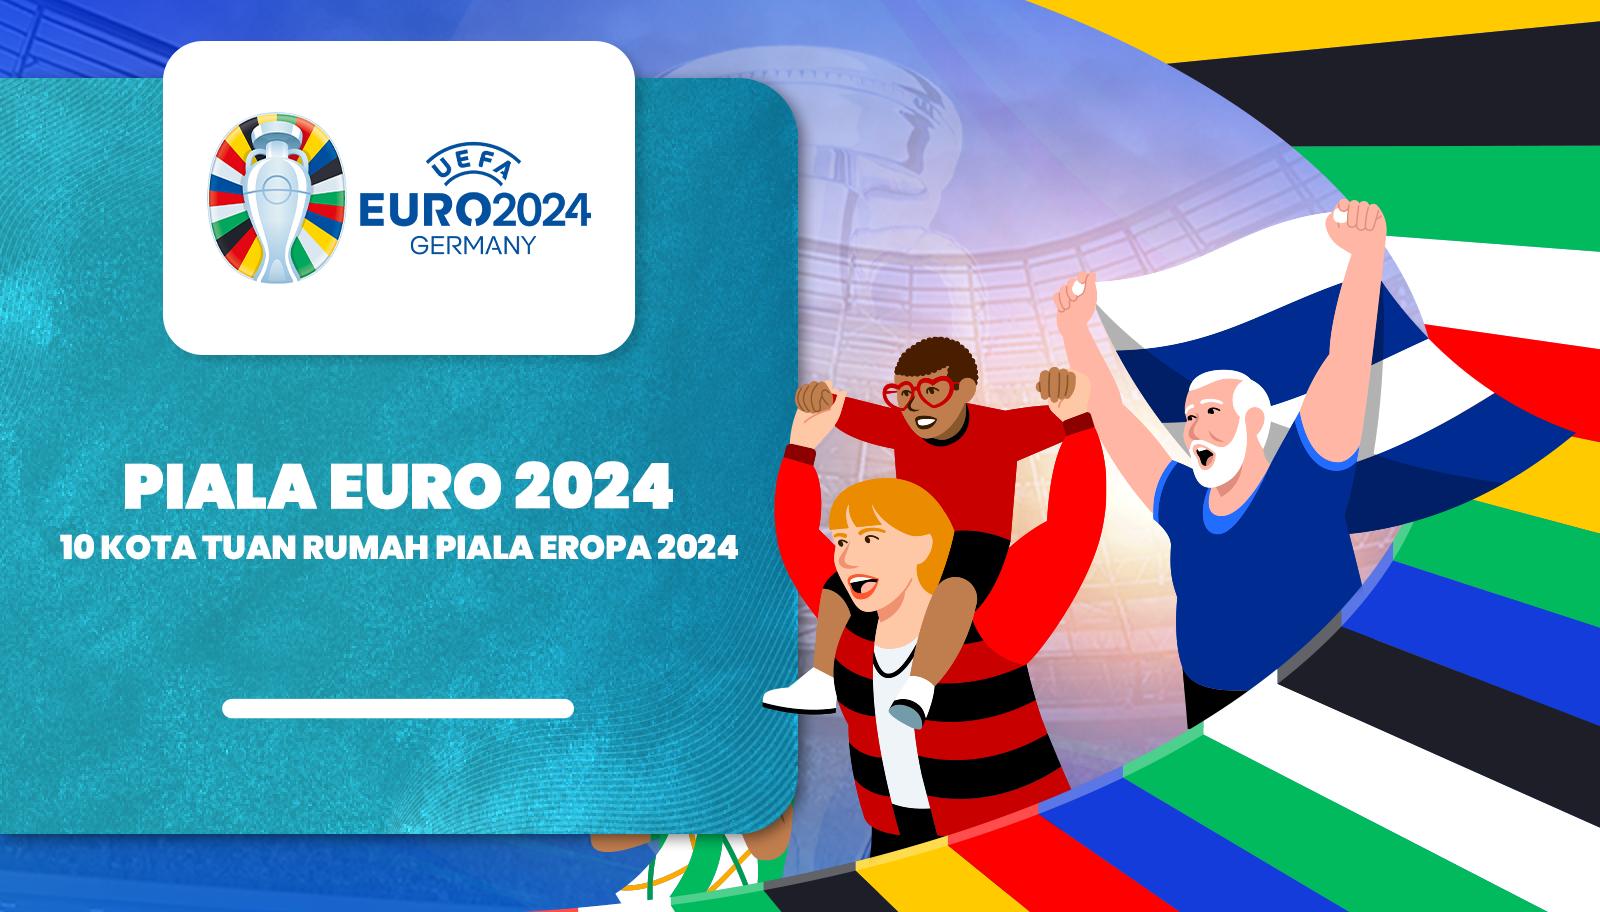 10 Kota Tuan Rumah Piala Euro 2024